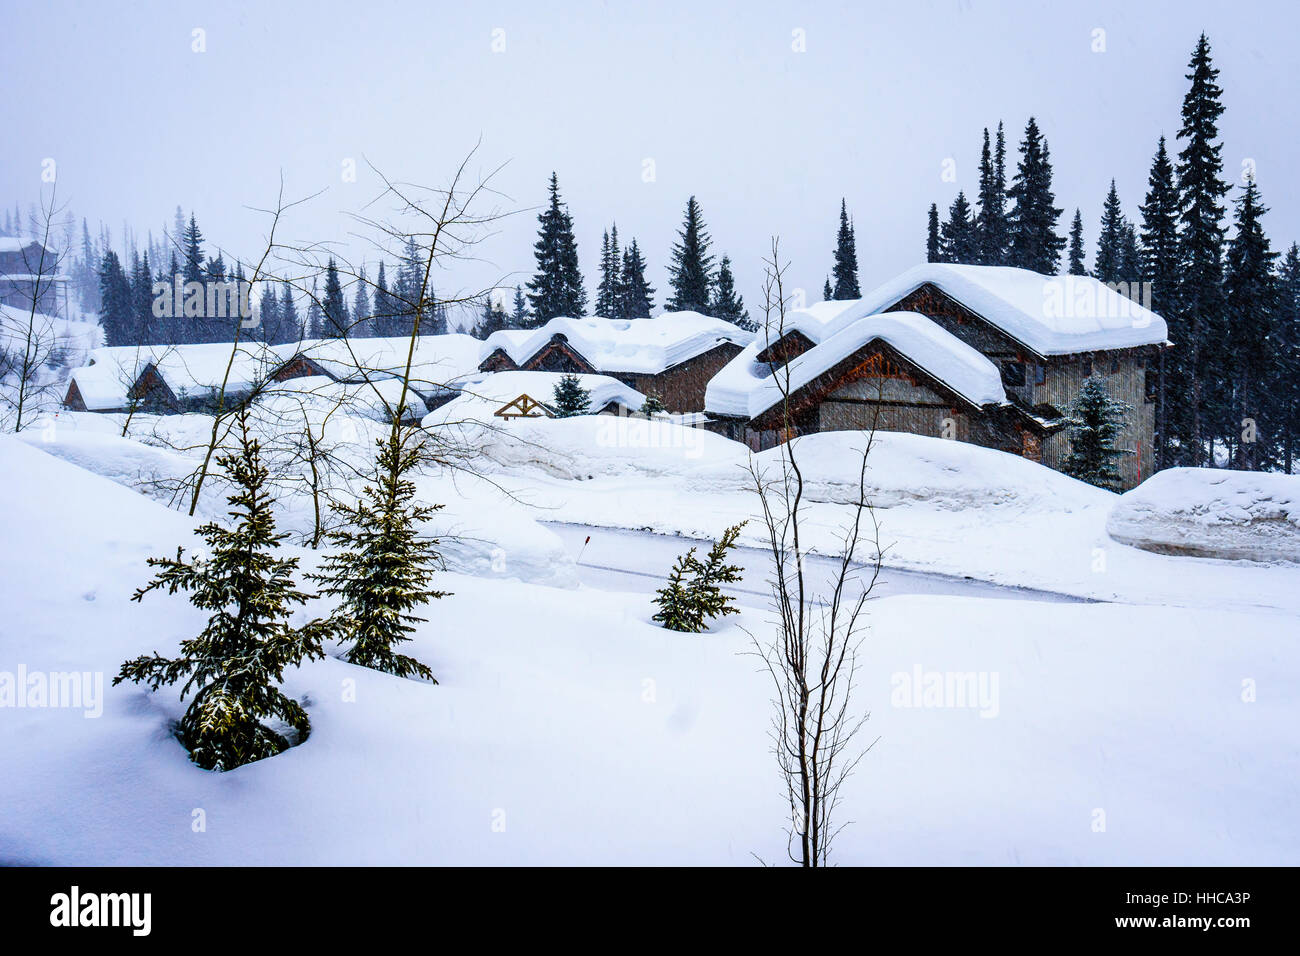 Paisaje invernal con techos cubiertos de nieve en la aldea alpina de Sun Peaks en las tierras altas del centro de Shuswap de British Columbia en Canadá Foto de stock